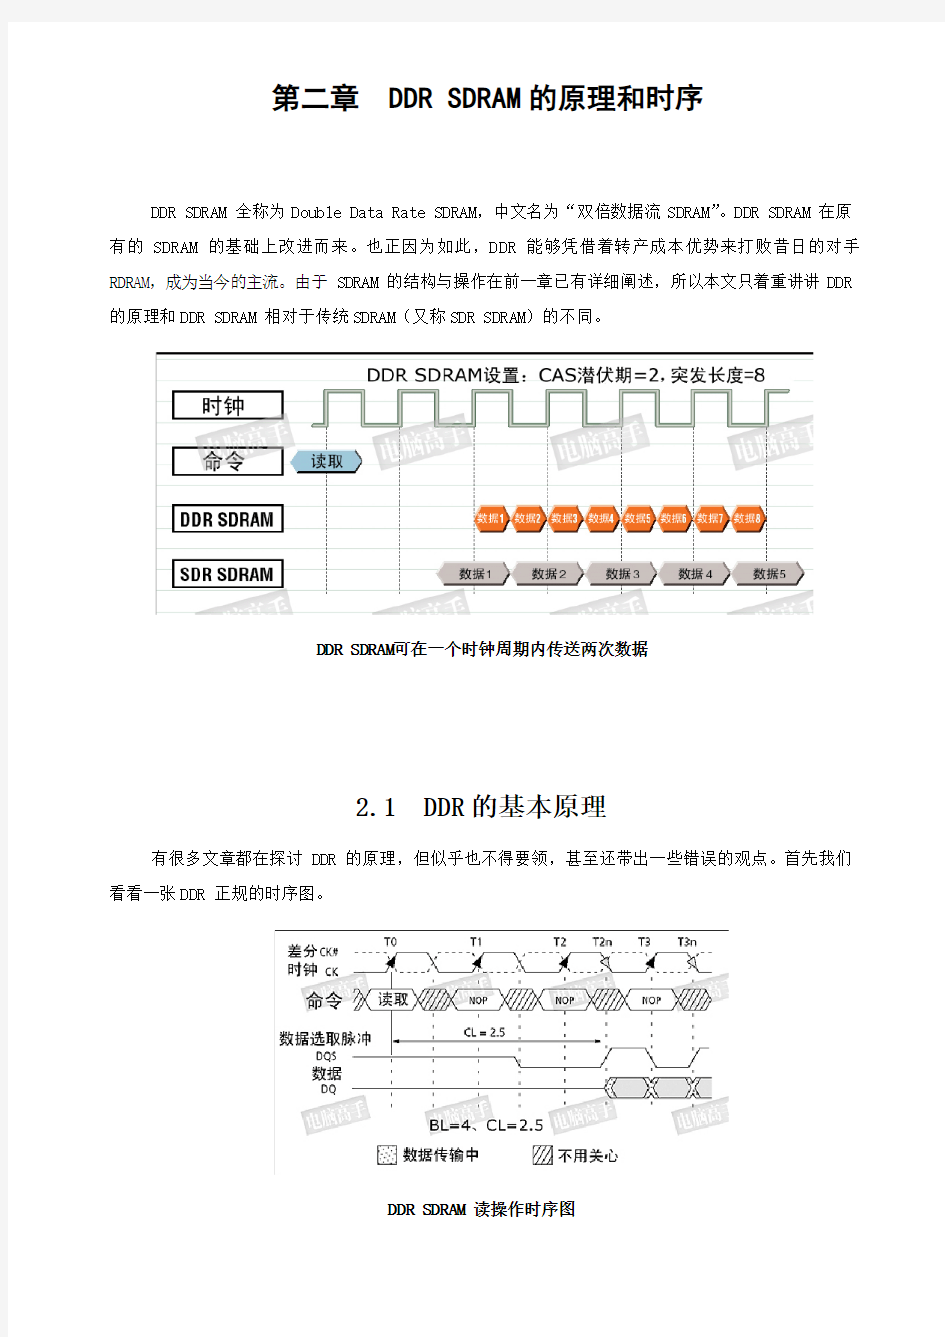 内存的原理和时序(SDRAM、DDR、DDR-Ⅱ、Rambus DRAM)-下